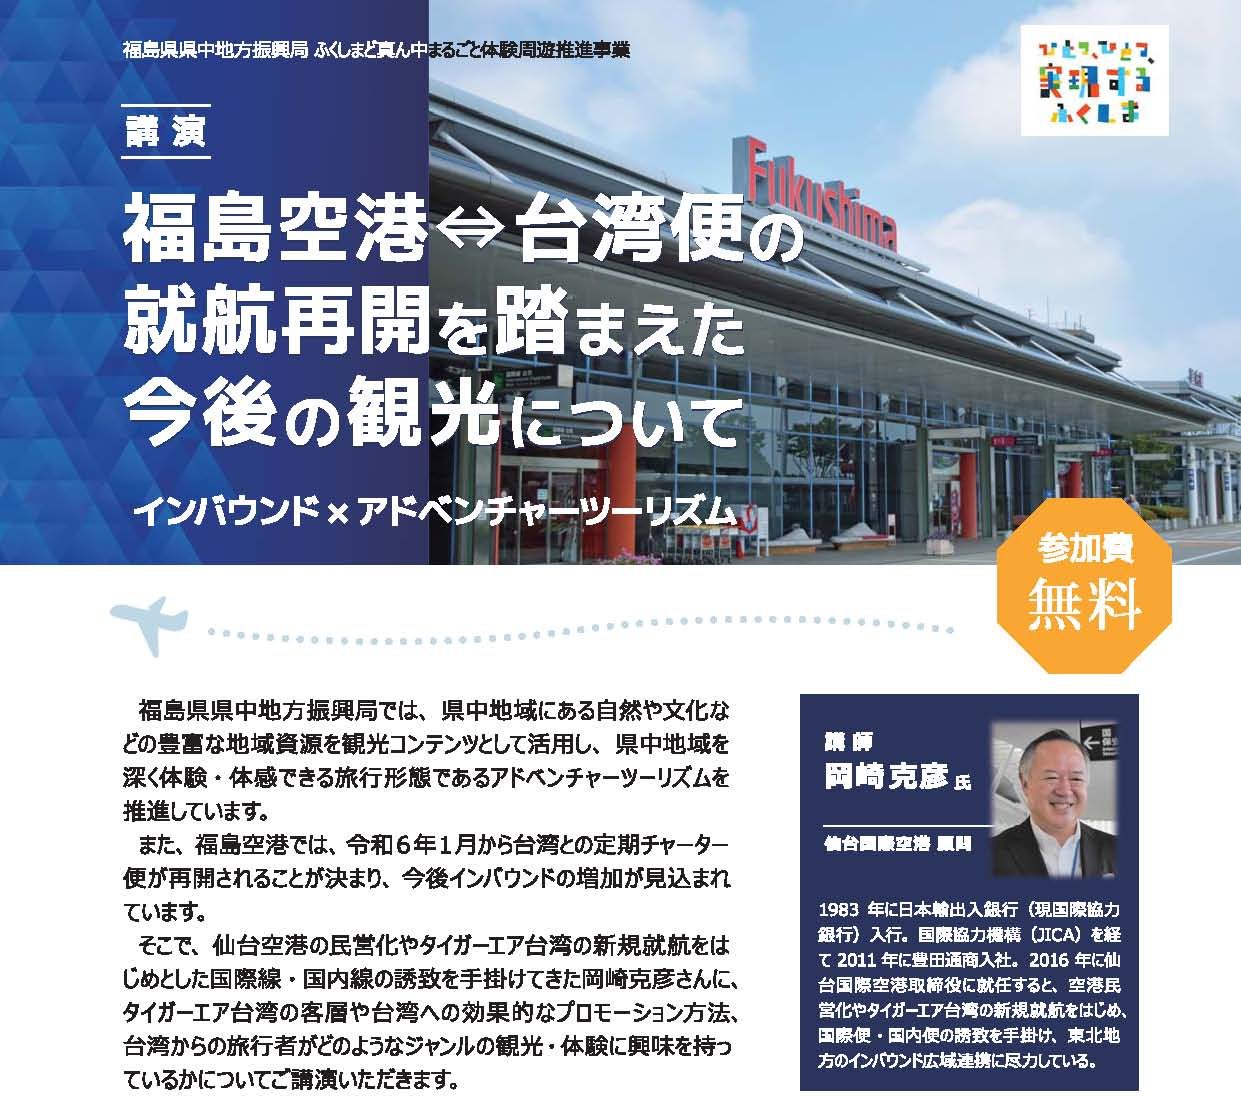 講演「福島空港⇔台湾便の就航再開を踏まえた今後の観光について」参加者募集のお知らせ